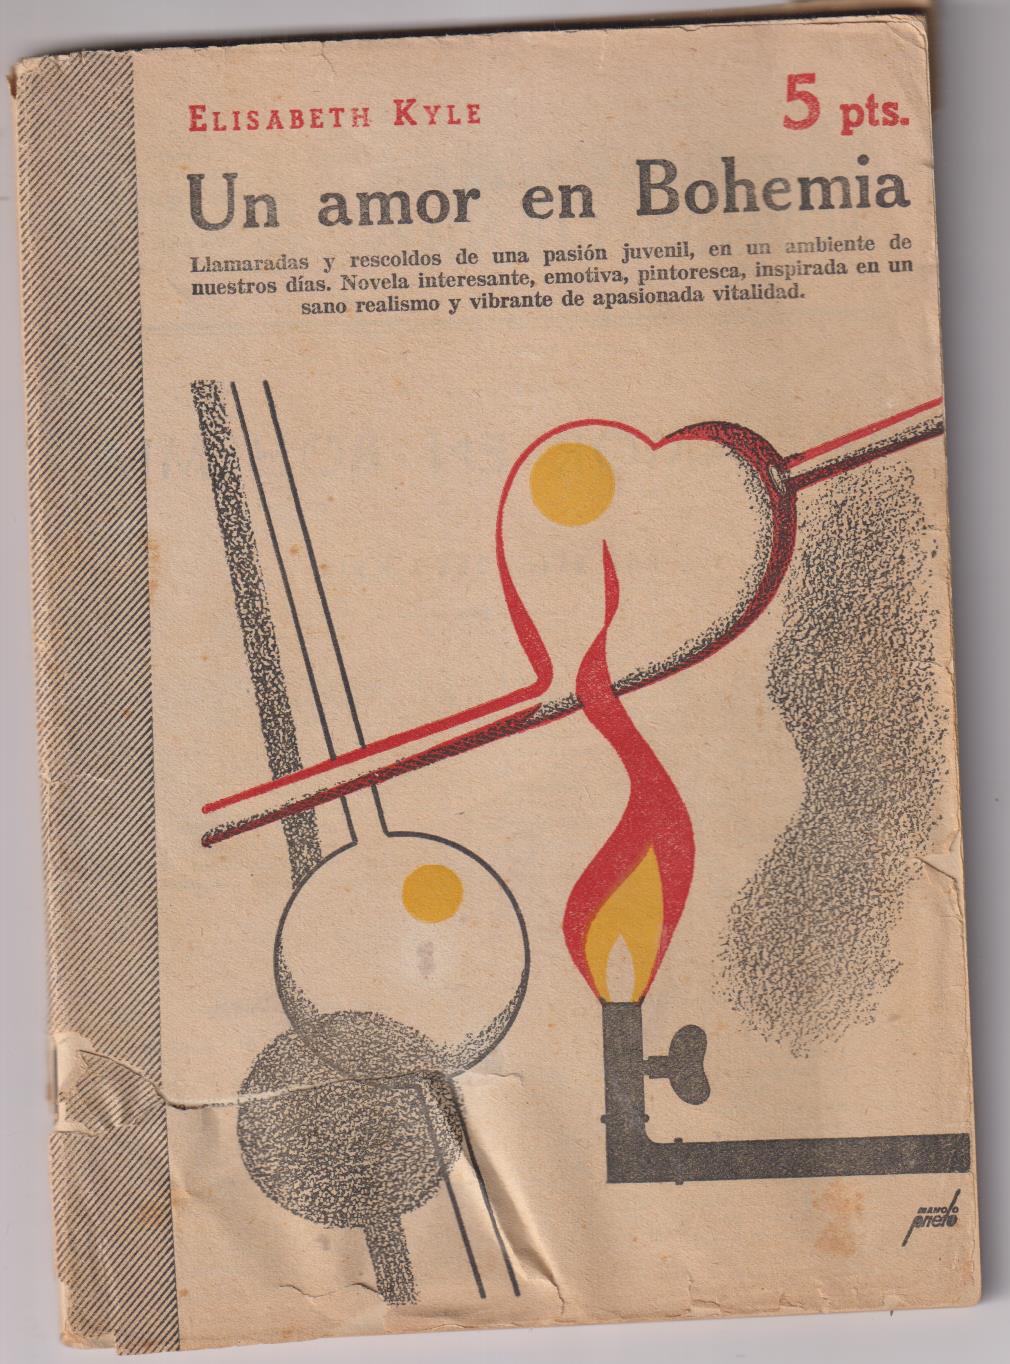 Revista Literaria Novelas y Cuentos nº 1131. Un amor en Bohemia por Elisabeth Kyle, año 1953